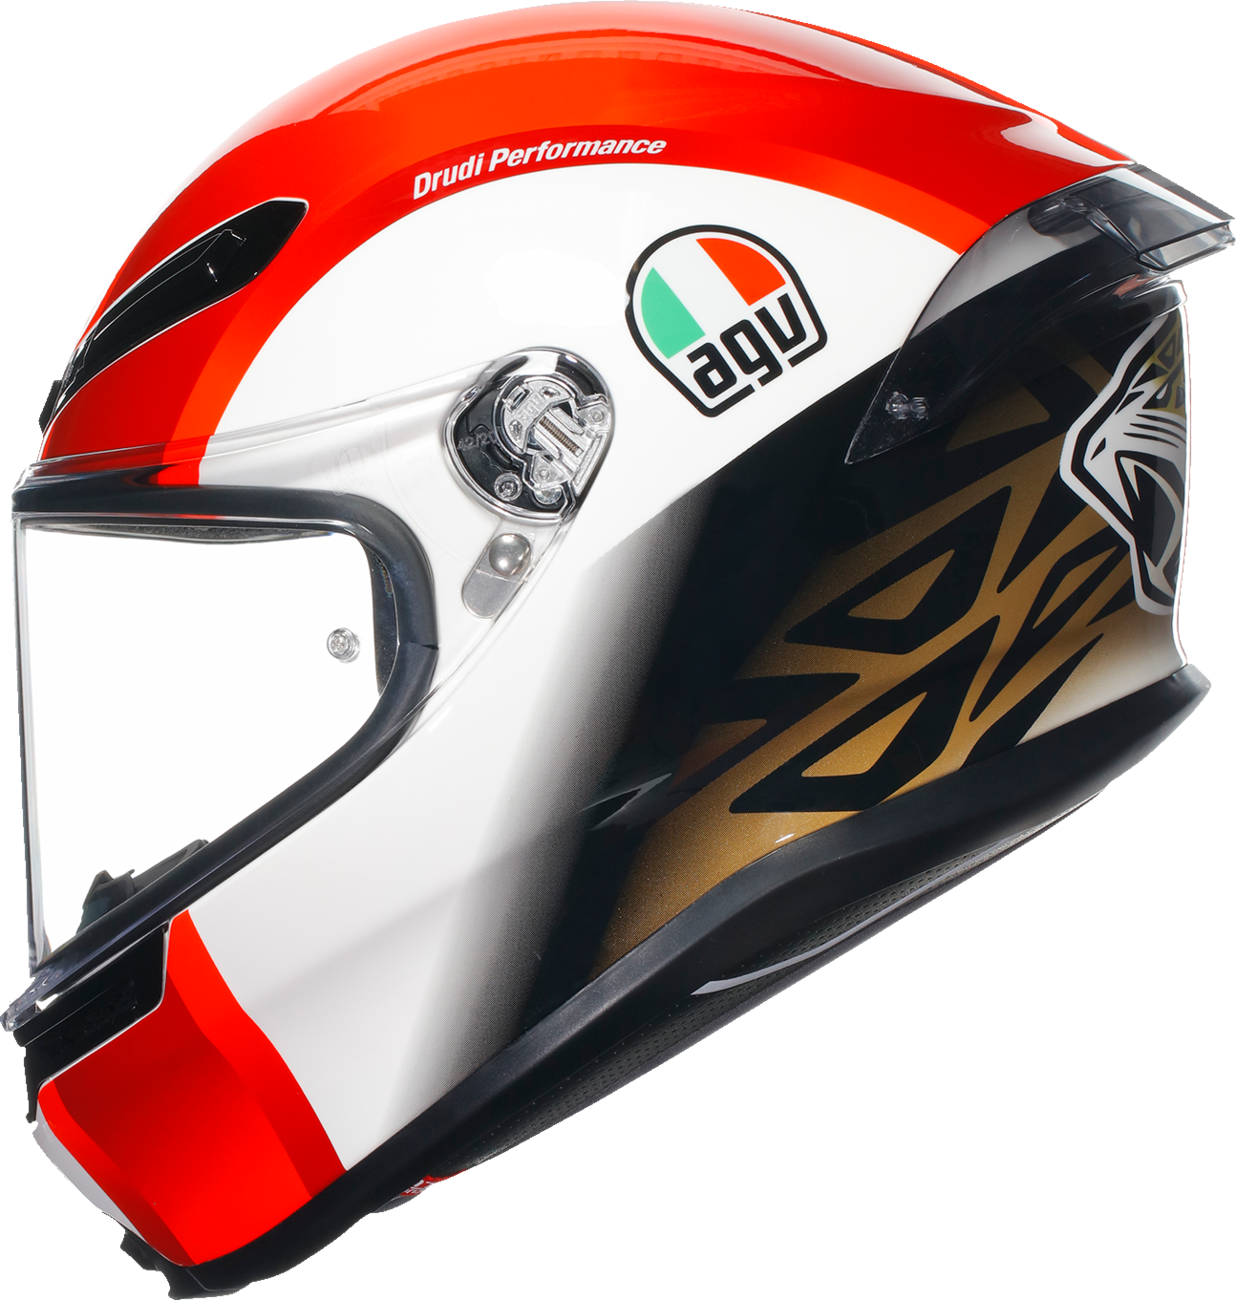 AGV K6 S Helmet - Sic58 - 2XL 21183950020042X